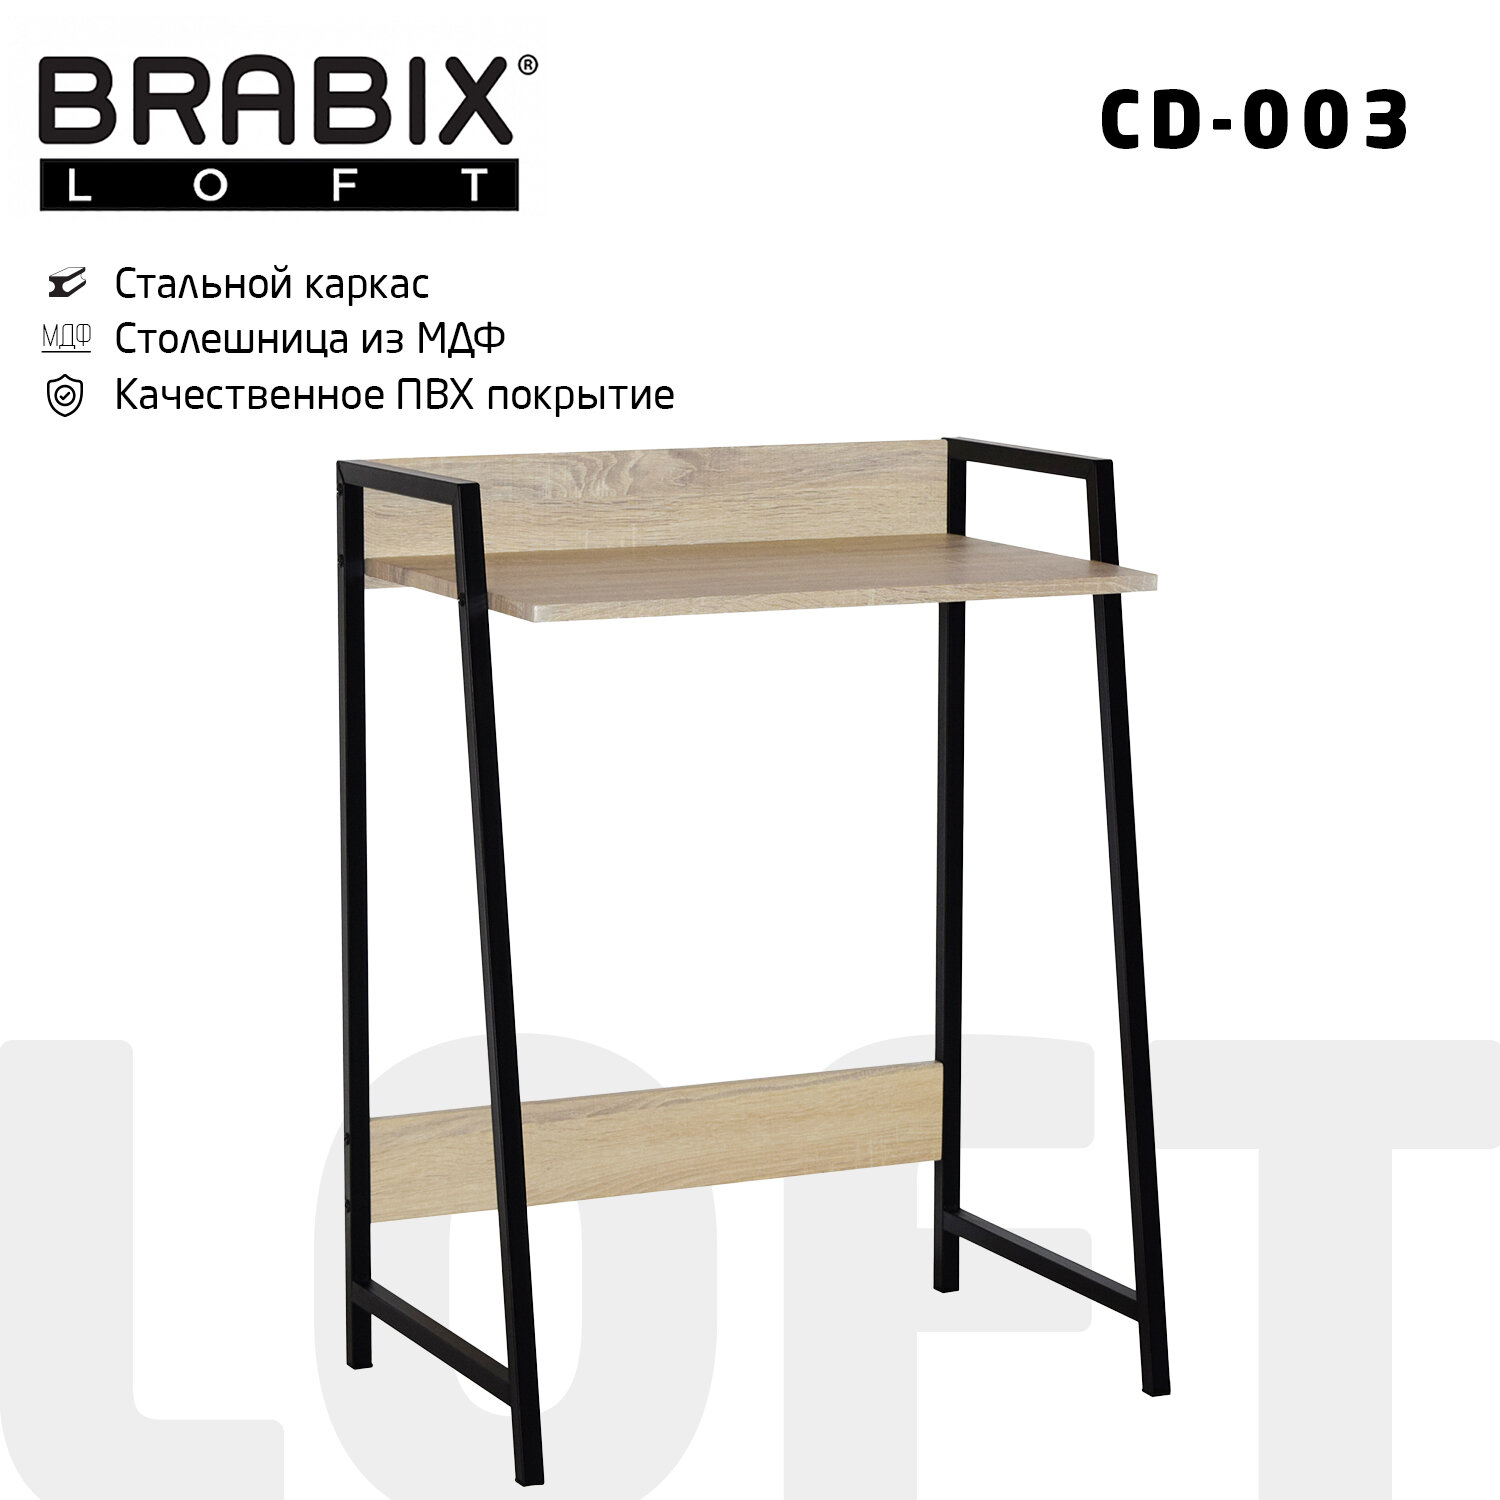 Стол Brabix Loft CD-002 641212